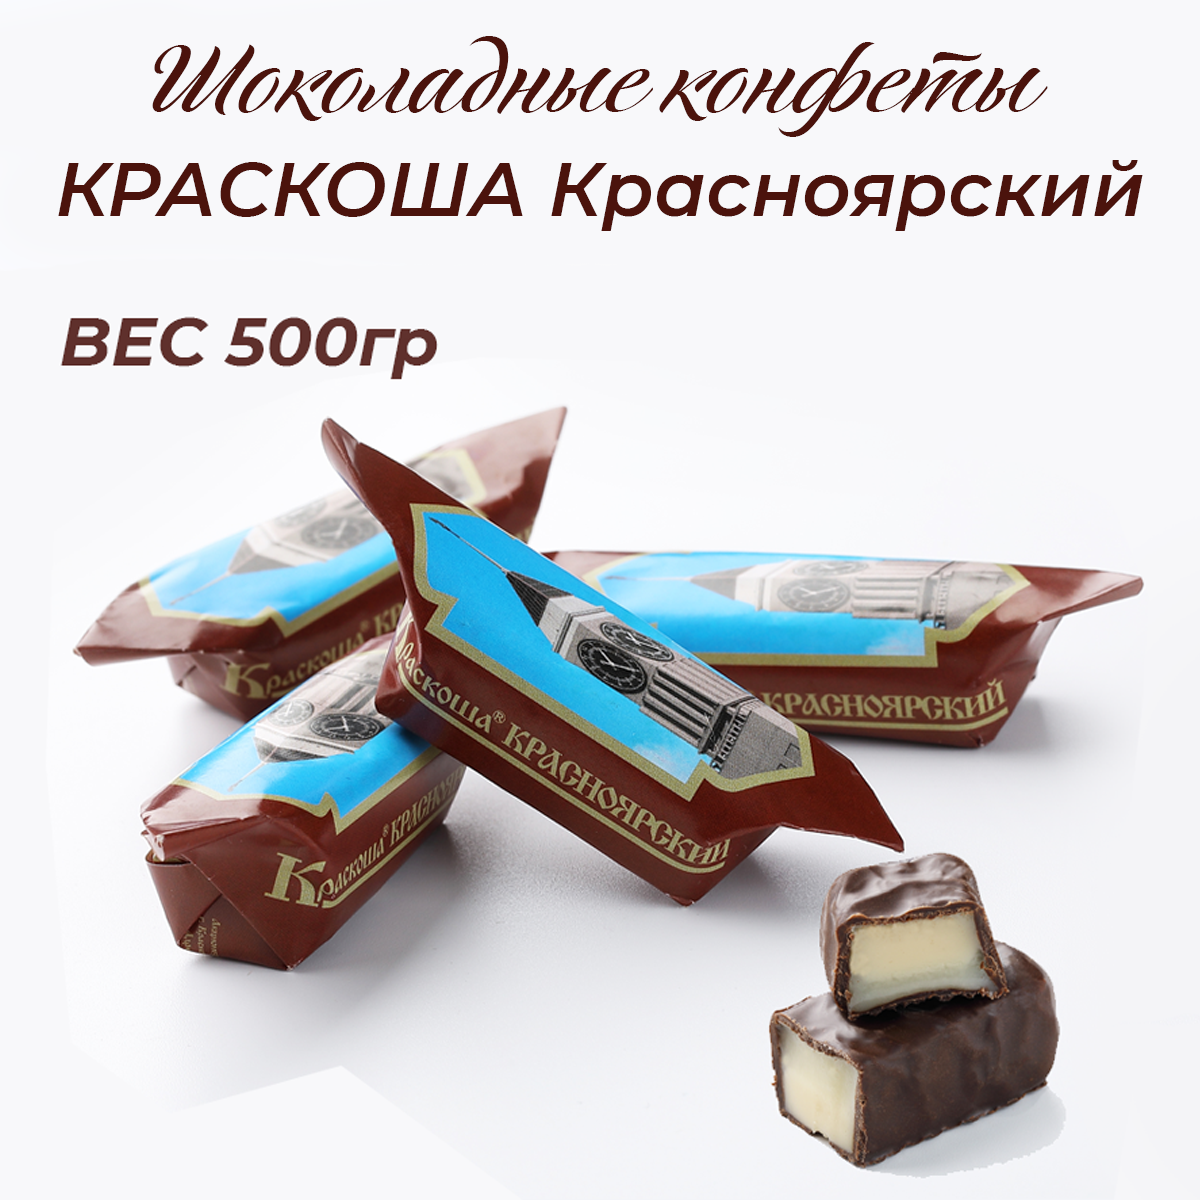 Шоколадные конфеты Краскоша Красноярский 500г